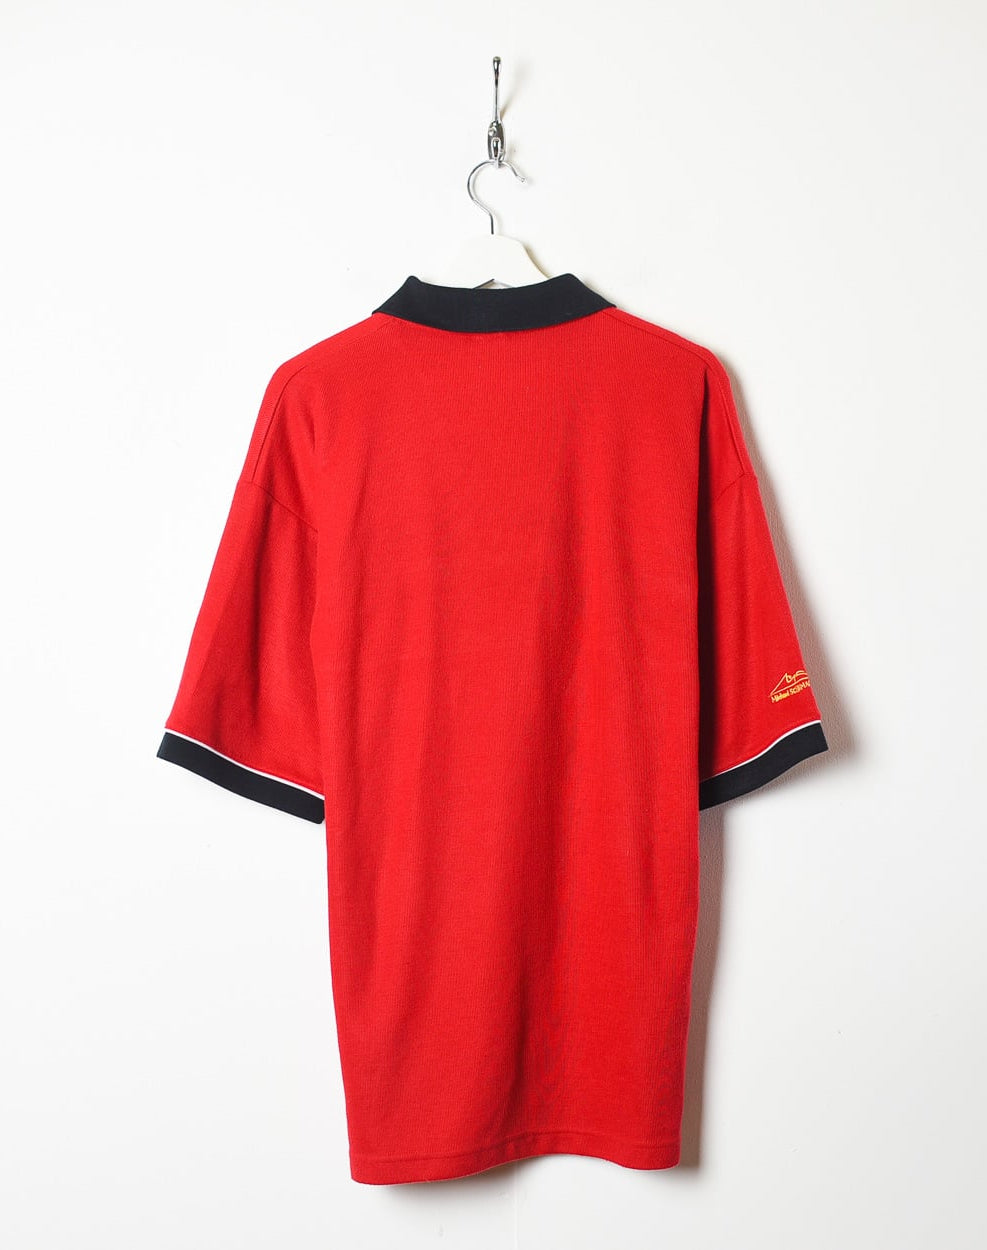 Red Scudaria Ferrari Polo Shirt - X-Large